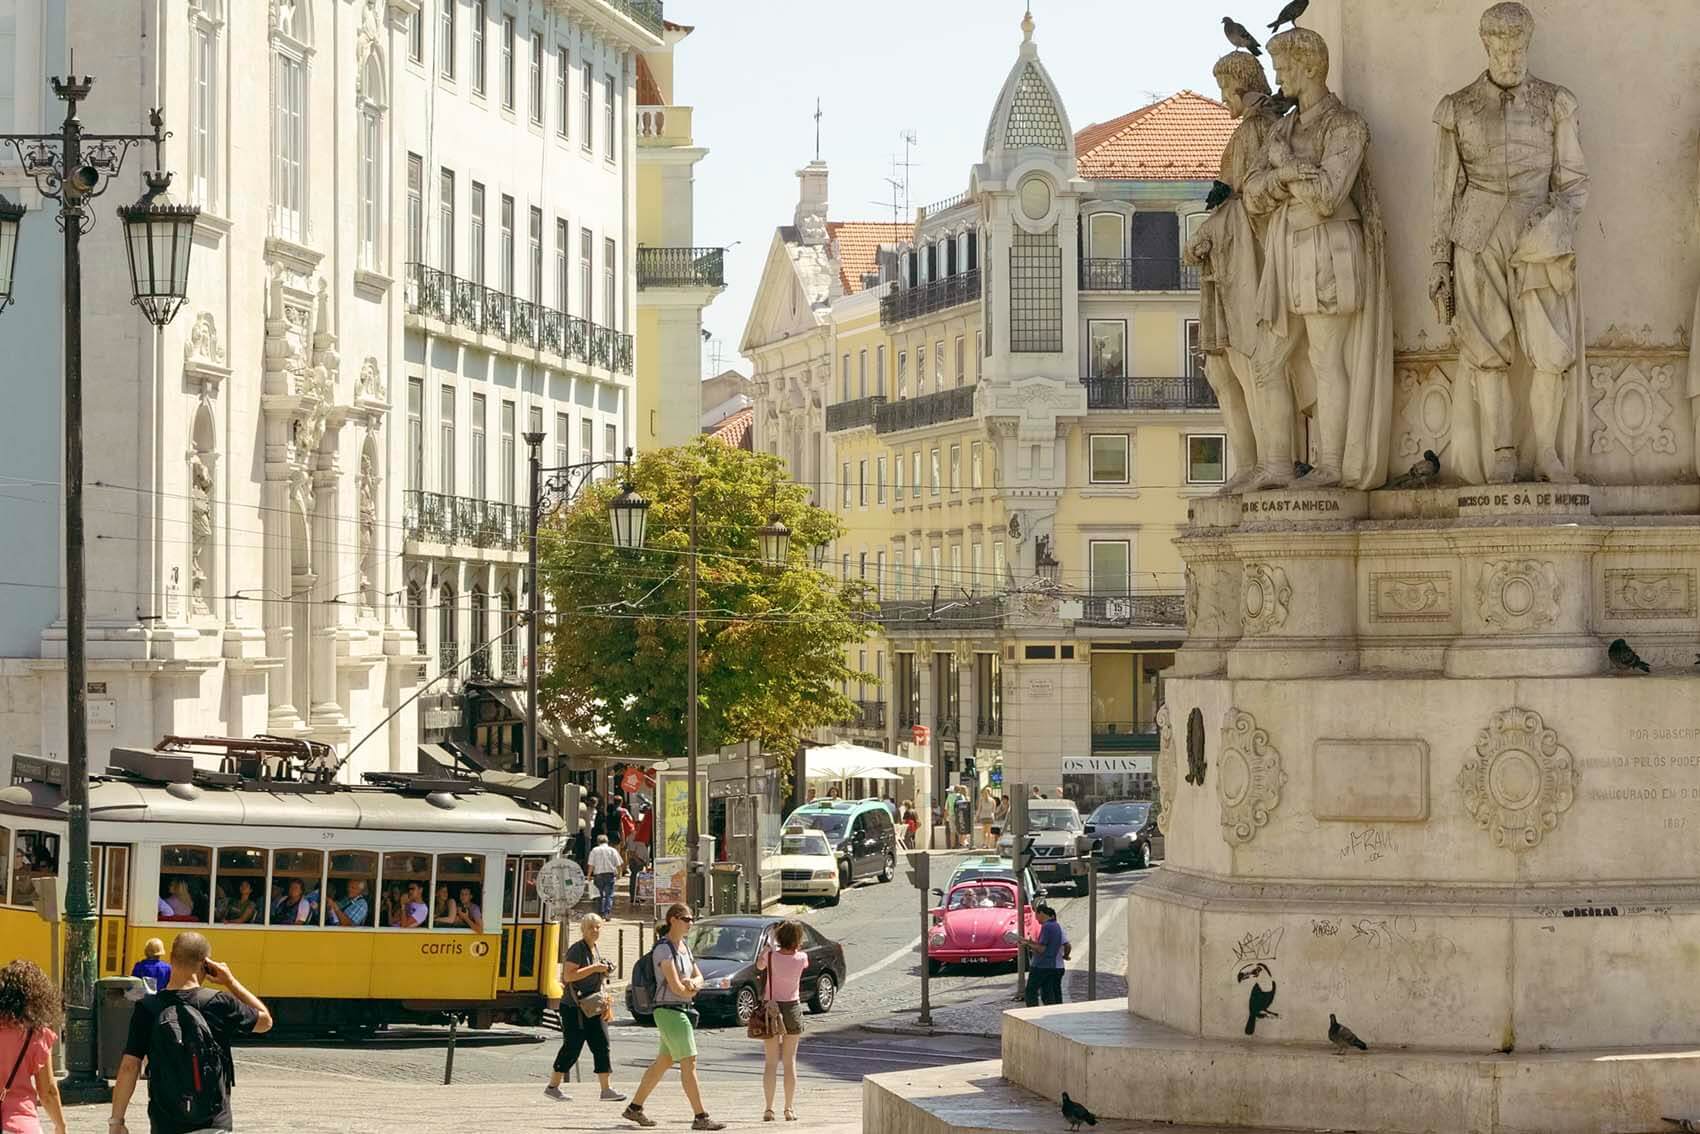 Lisboa - Tram 28 crossing Chiado neighbourhood  | © Turismo de Lisboa |